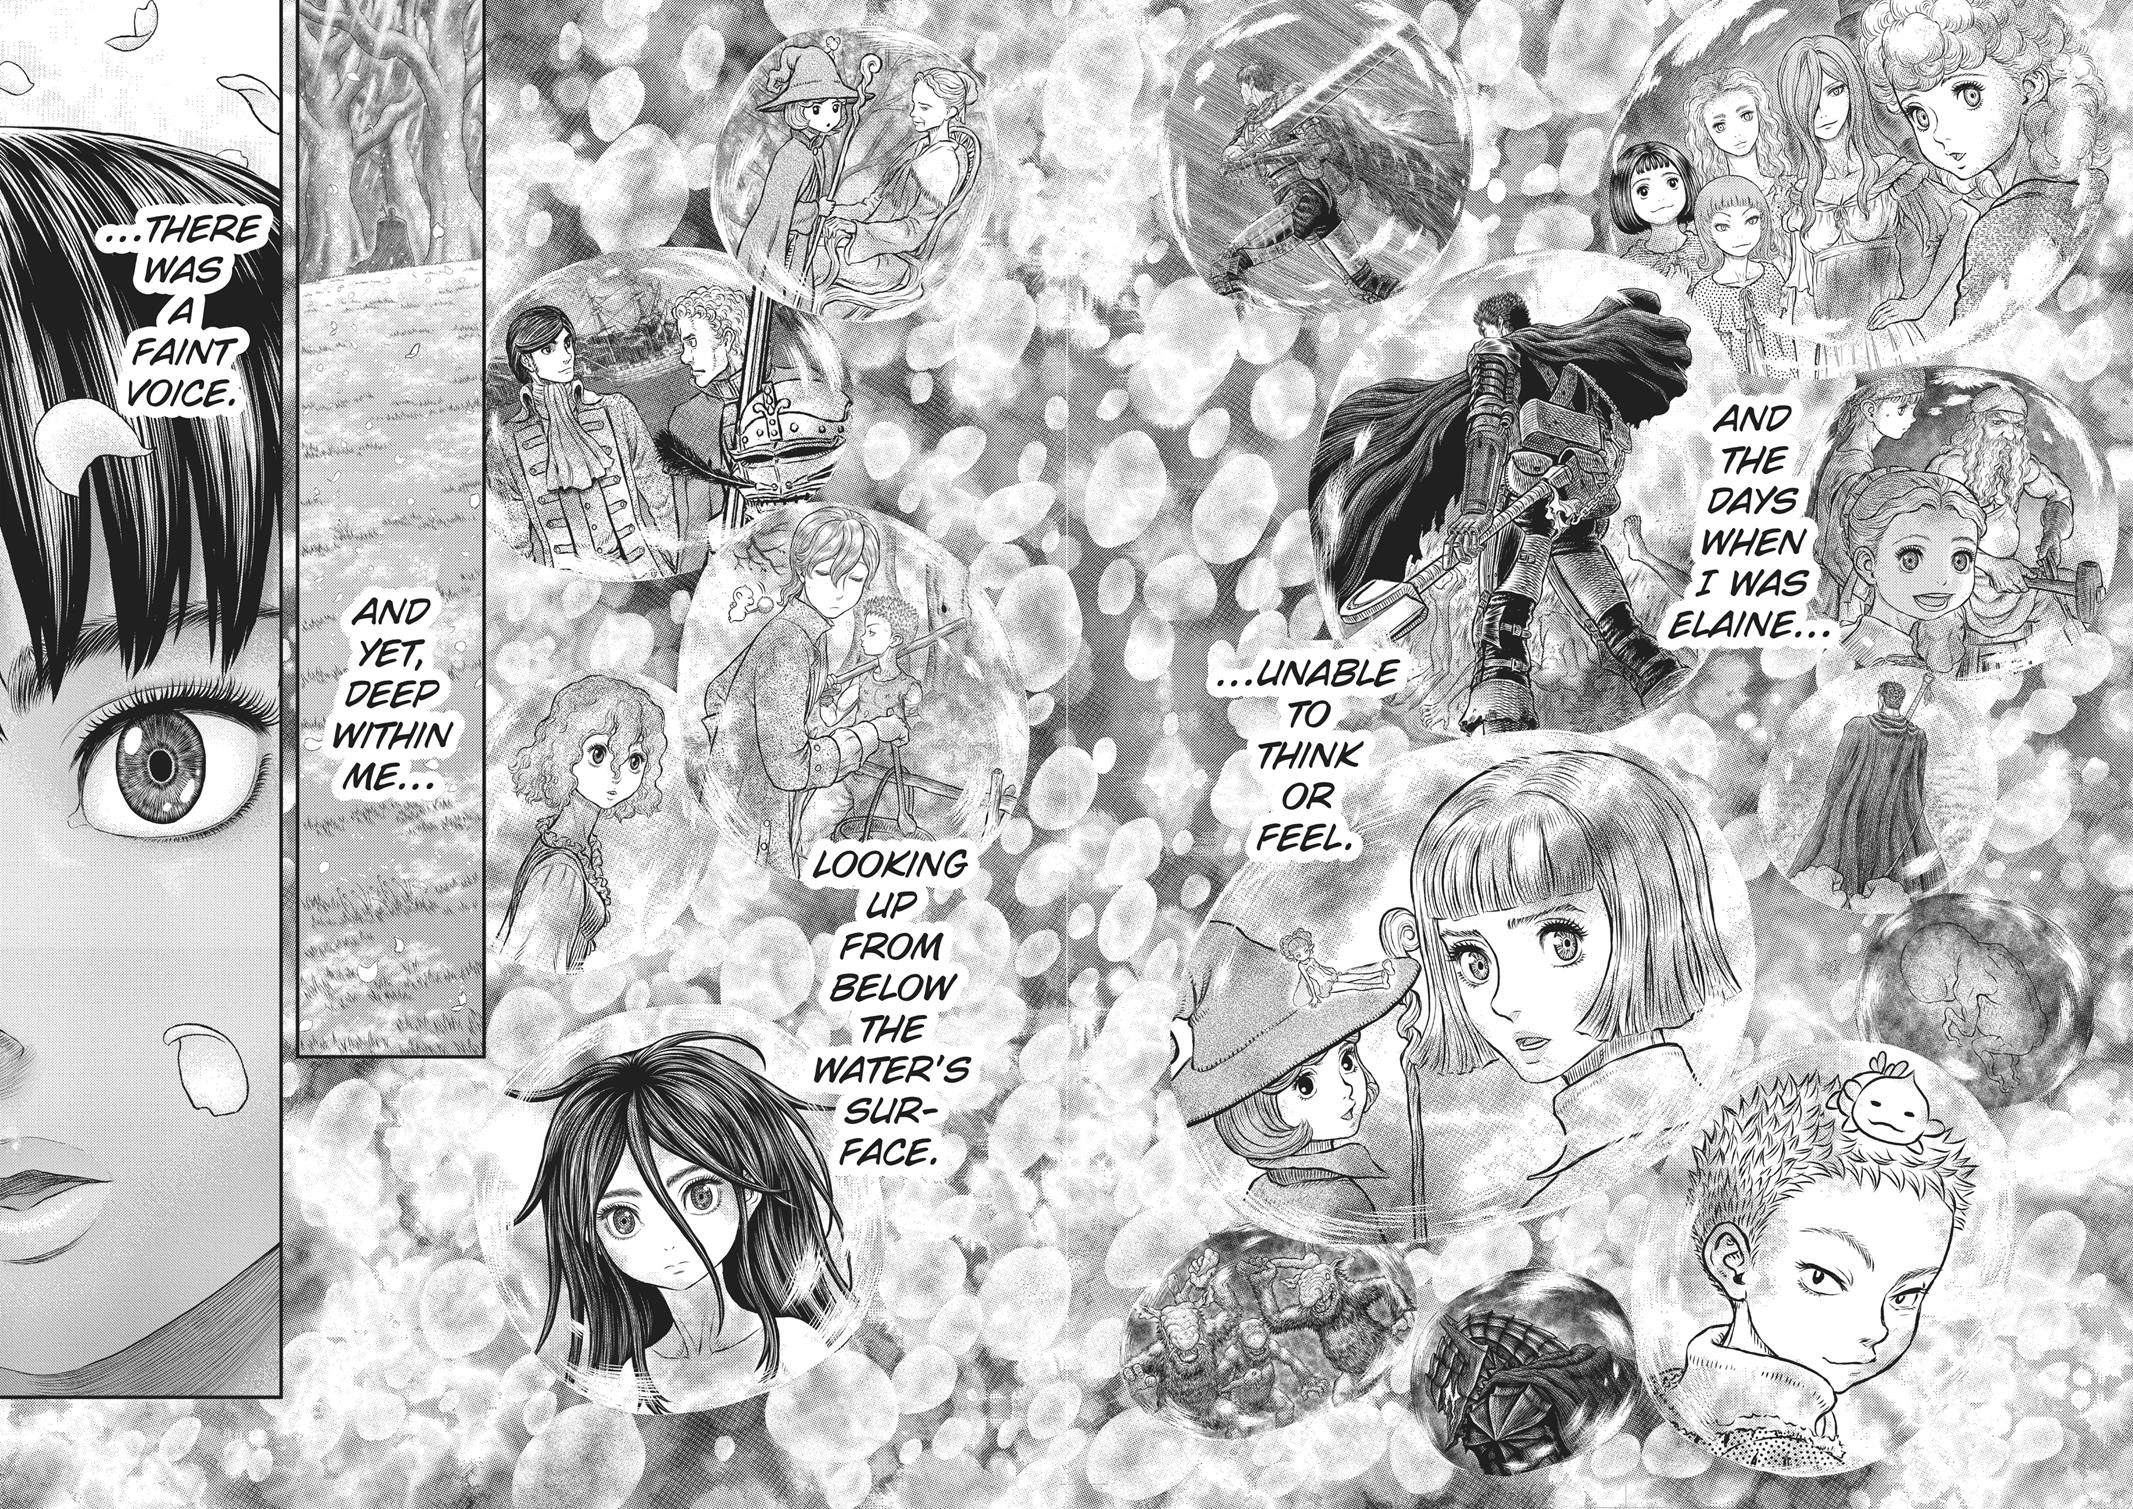 Berserk Manga Chapter 355 image 12